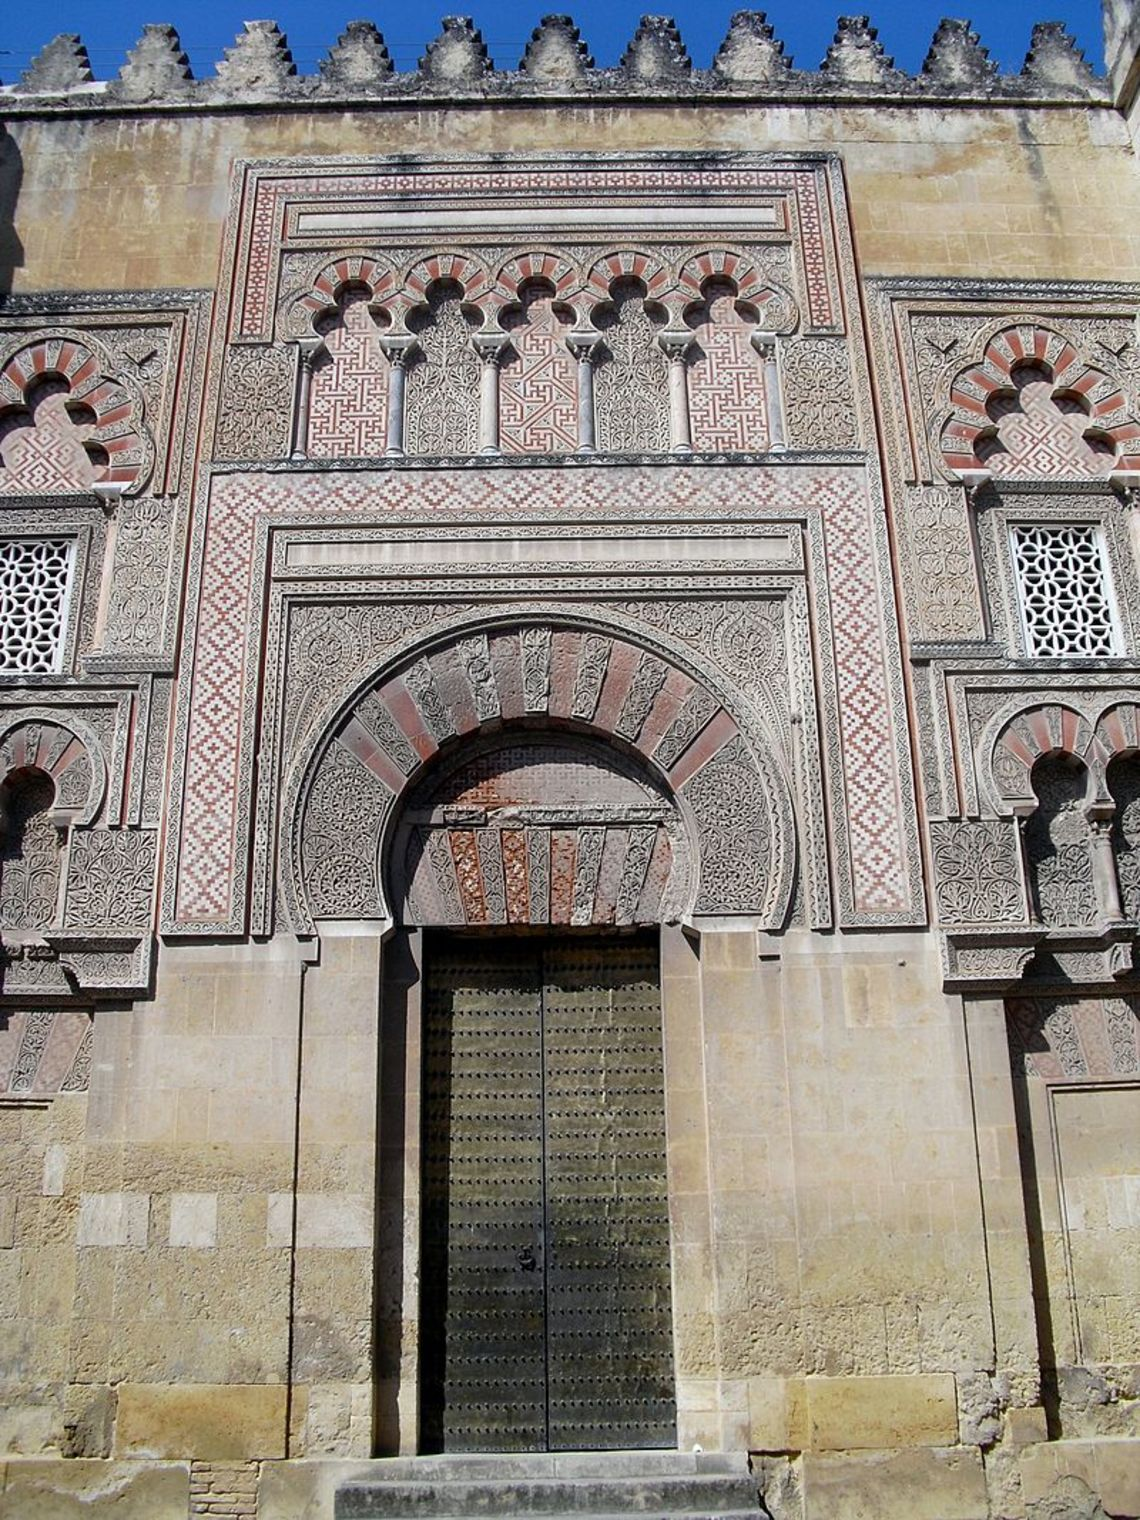 Đền thờ Hồi giáo tuyệt đẹp chuyển thành nhà thờ chính tòa ở miền nam Tây Ban nha